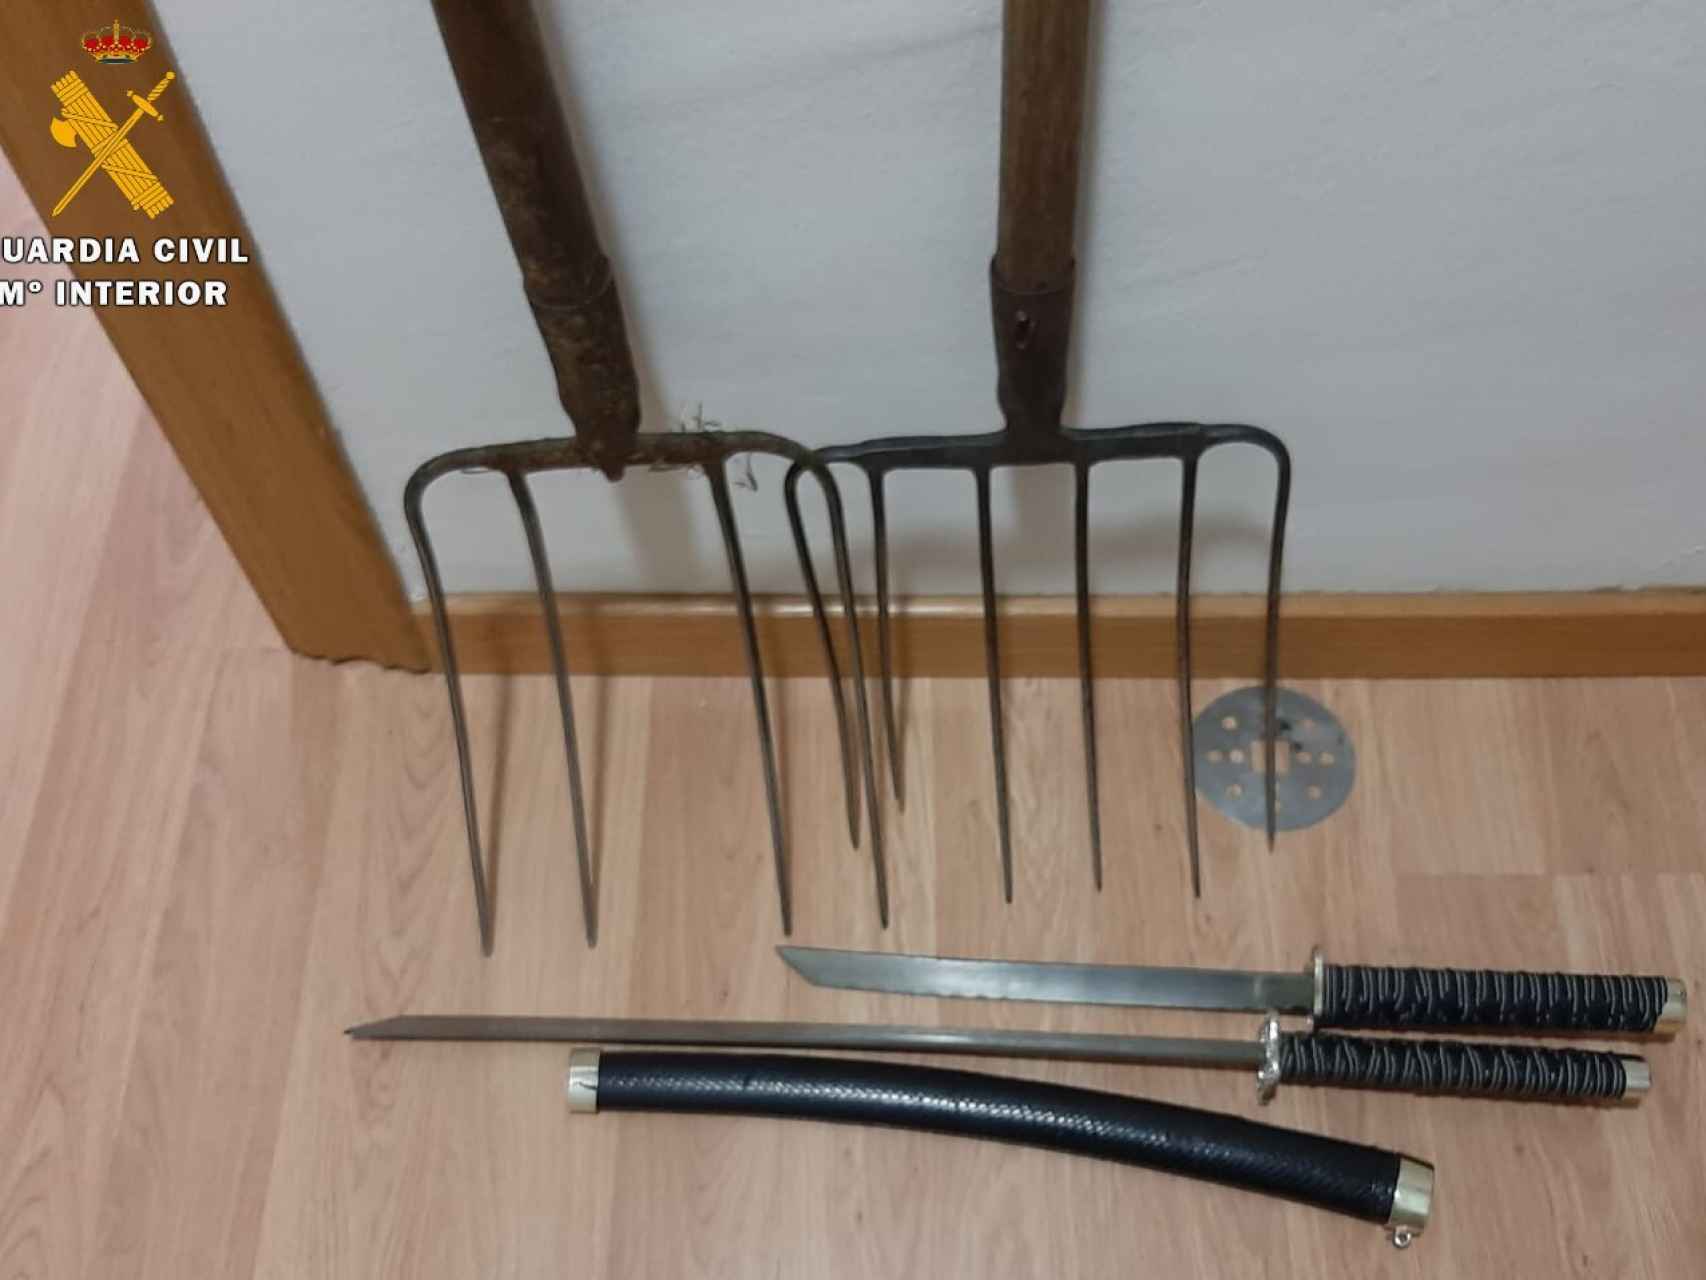 Imagen de las armas requisadas en Herrera de Pisuerga facilitada por la Guardia Civil